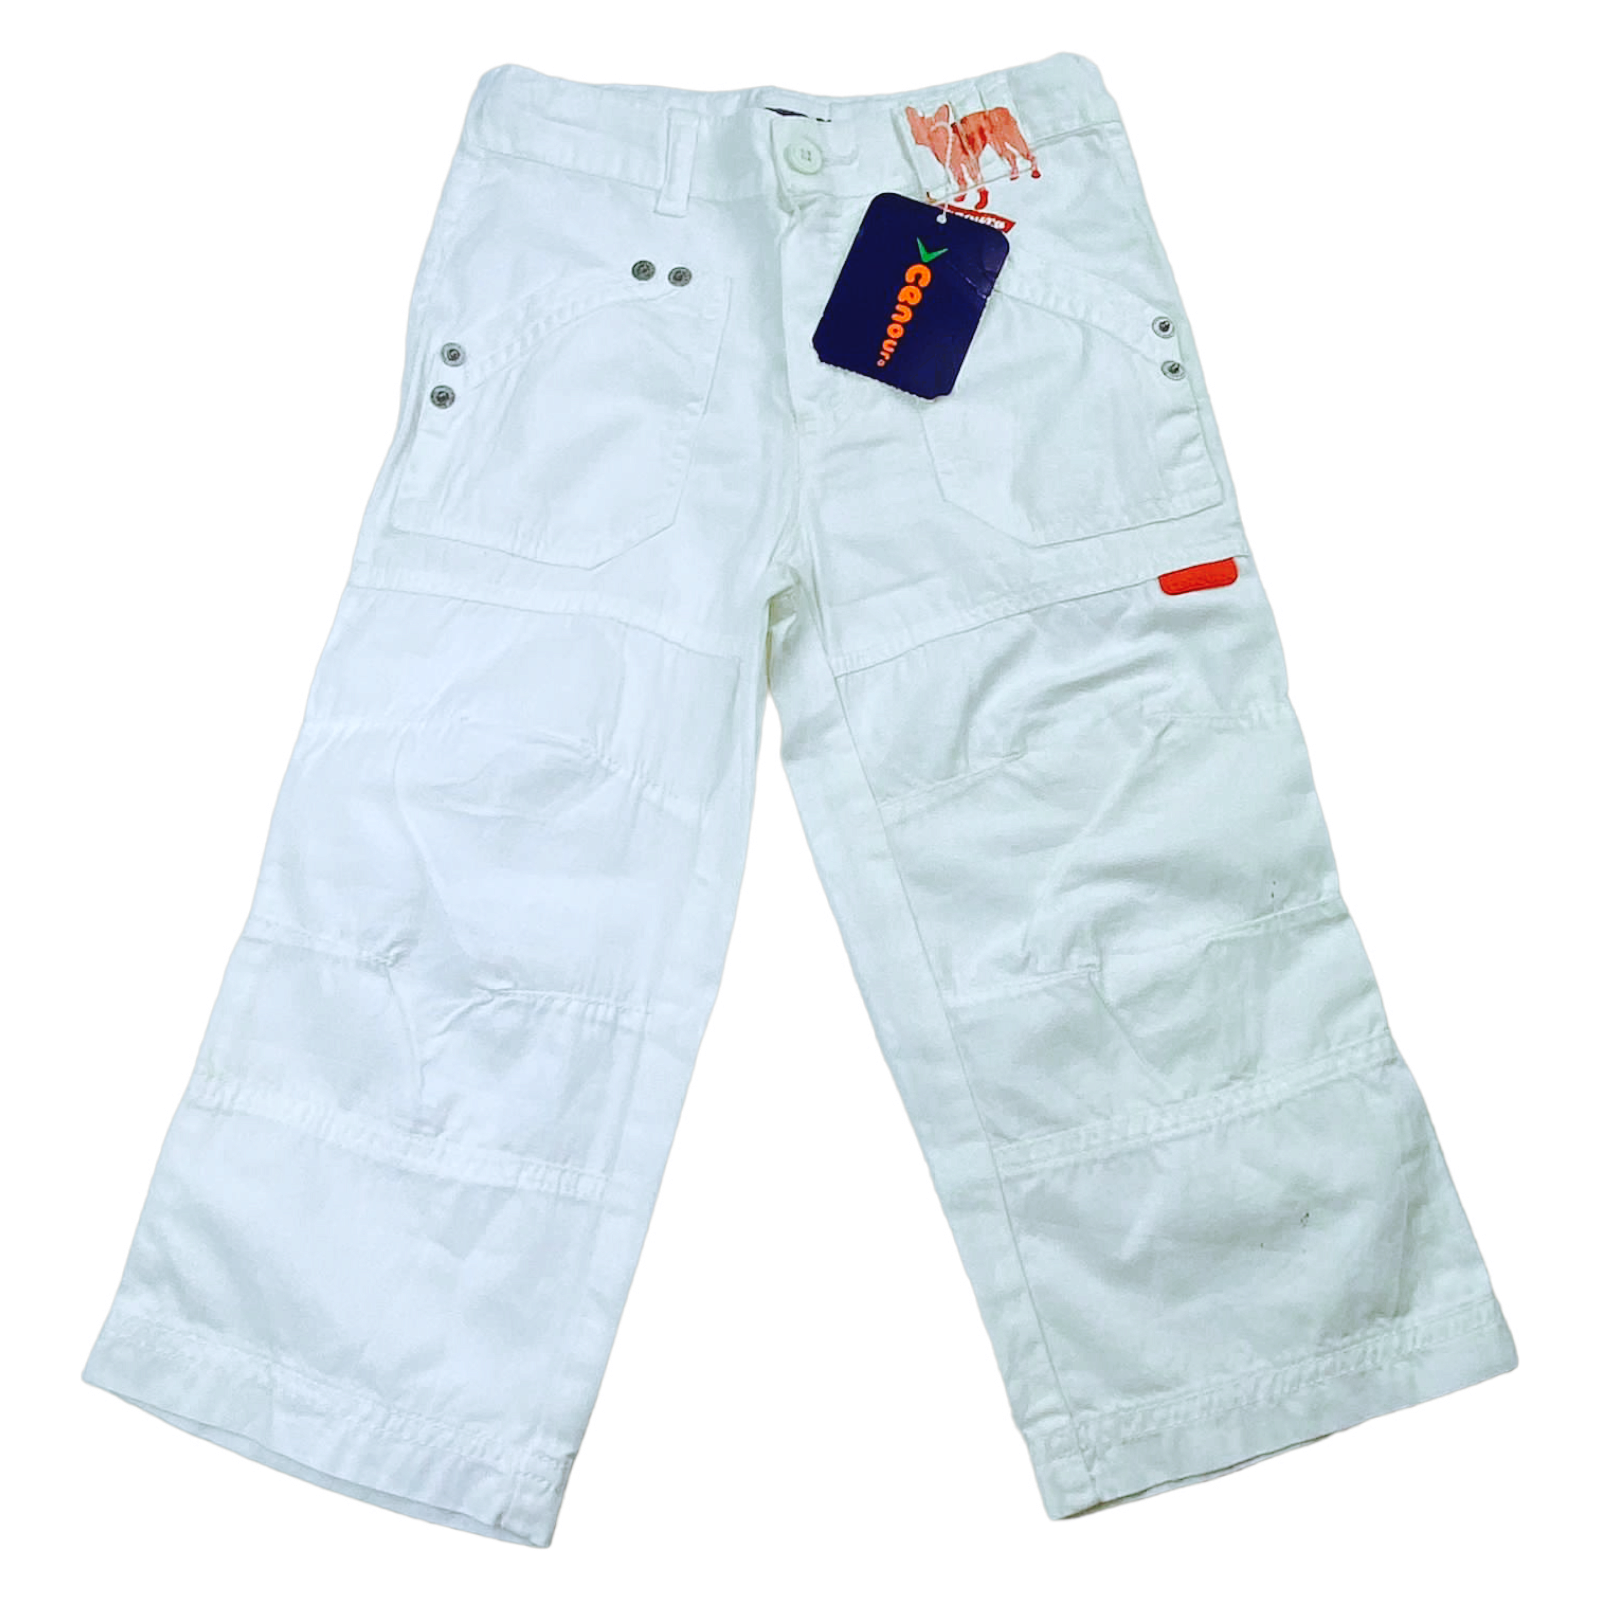 Pantalon blanco nuevo con etiqueta